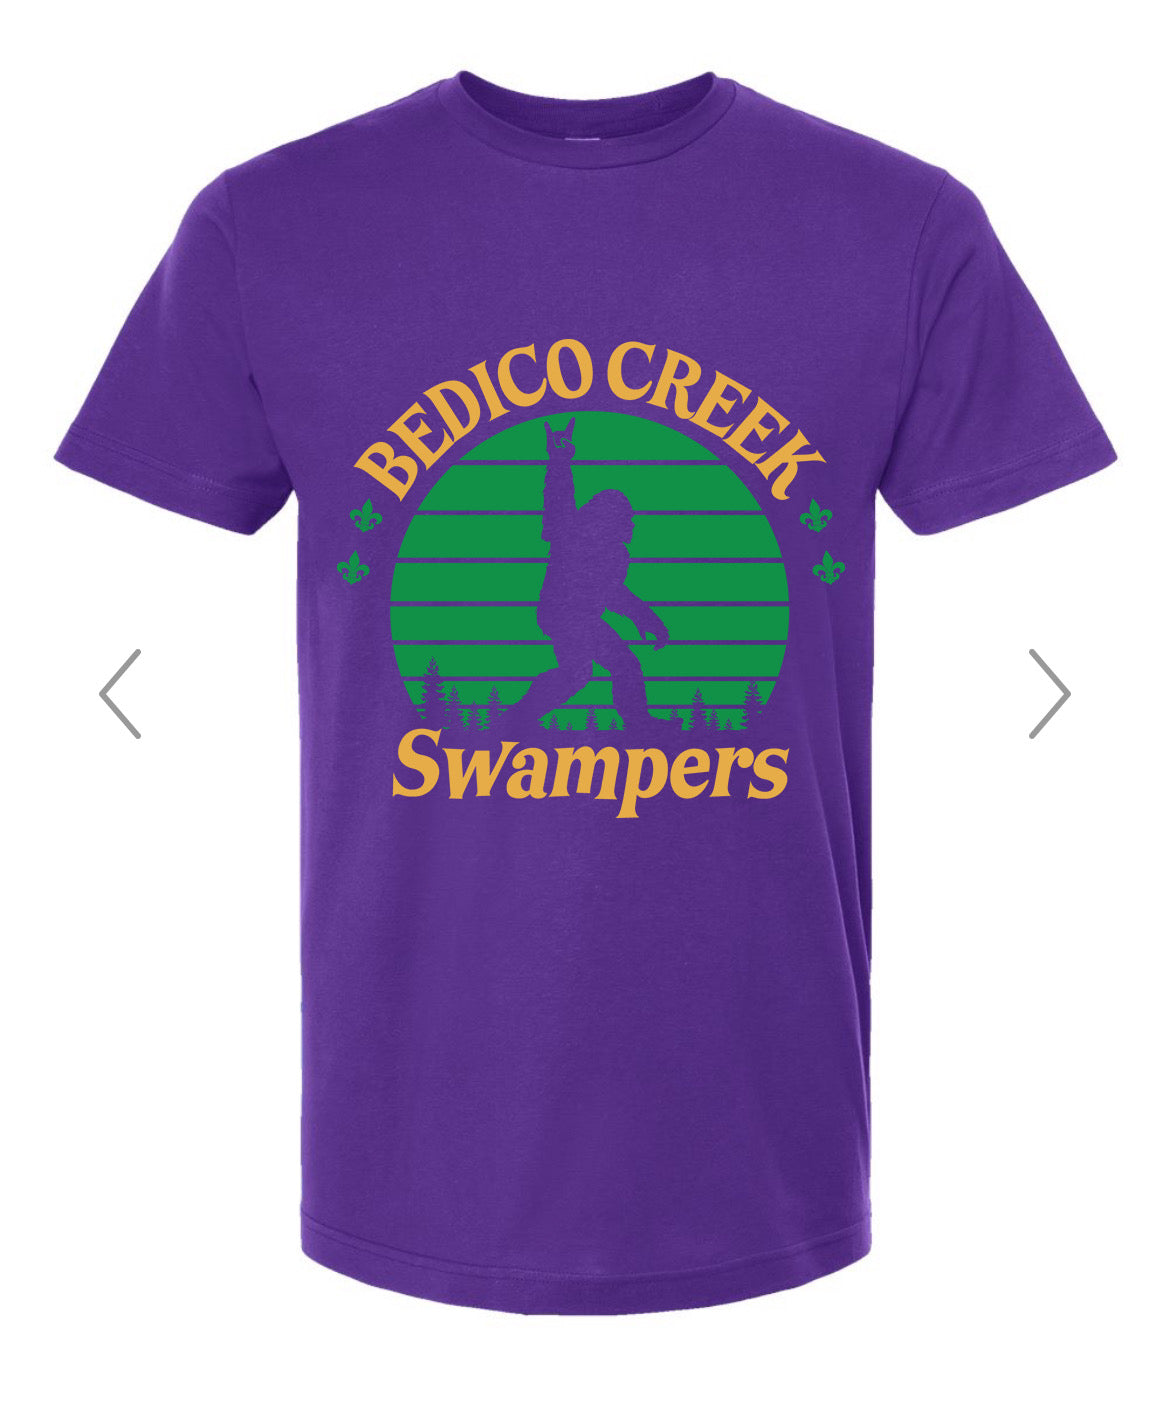 Bedico Creek Swamper T-Shirt